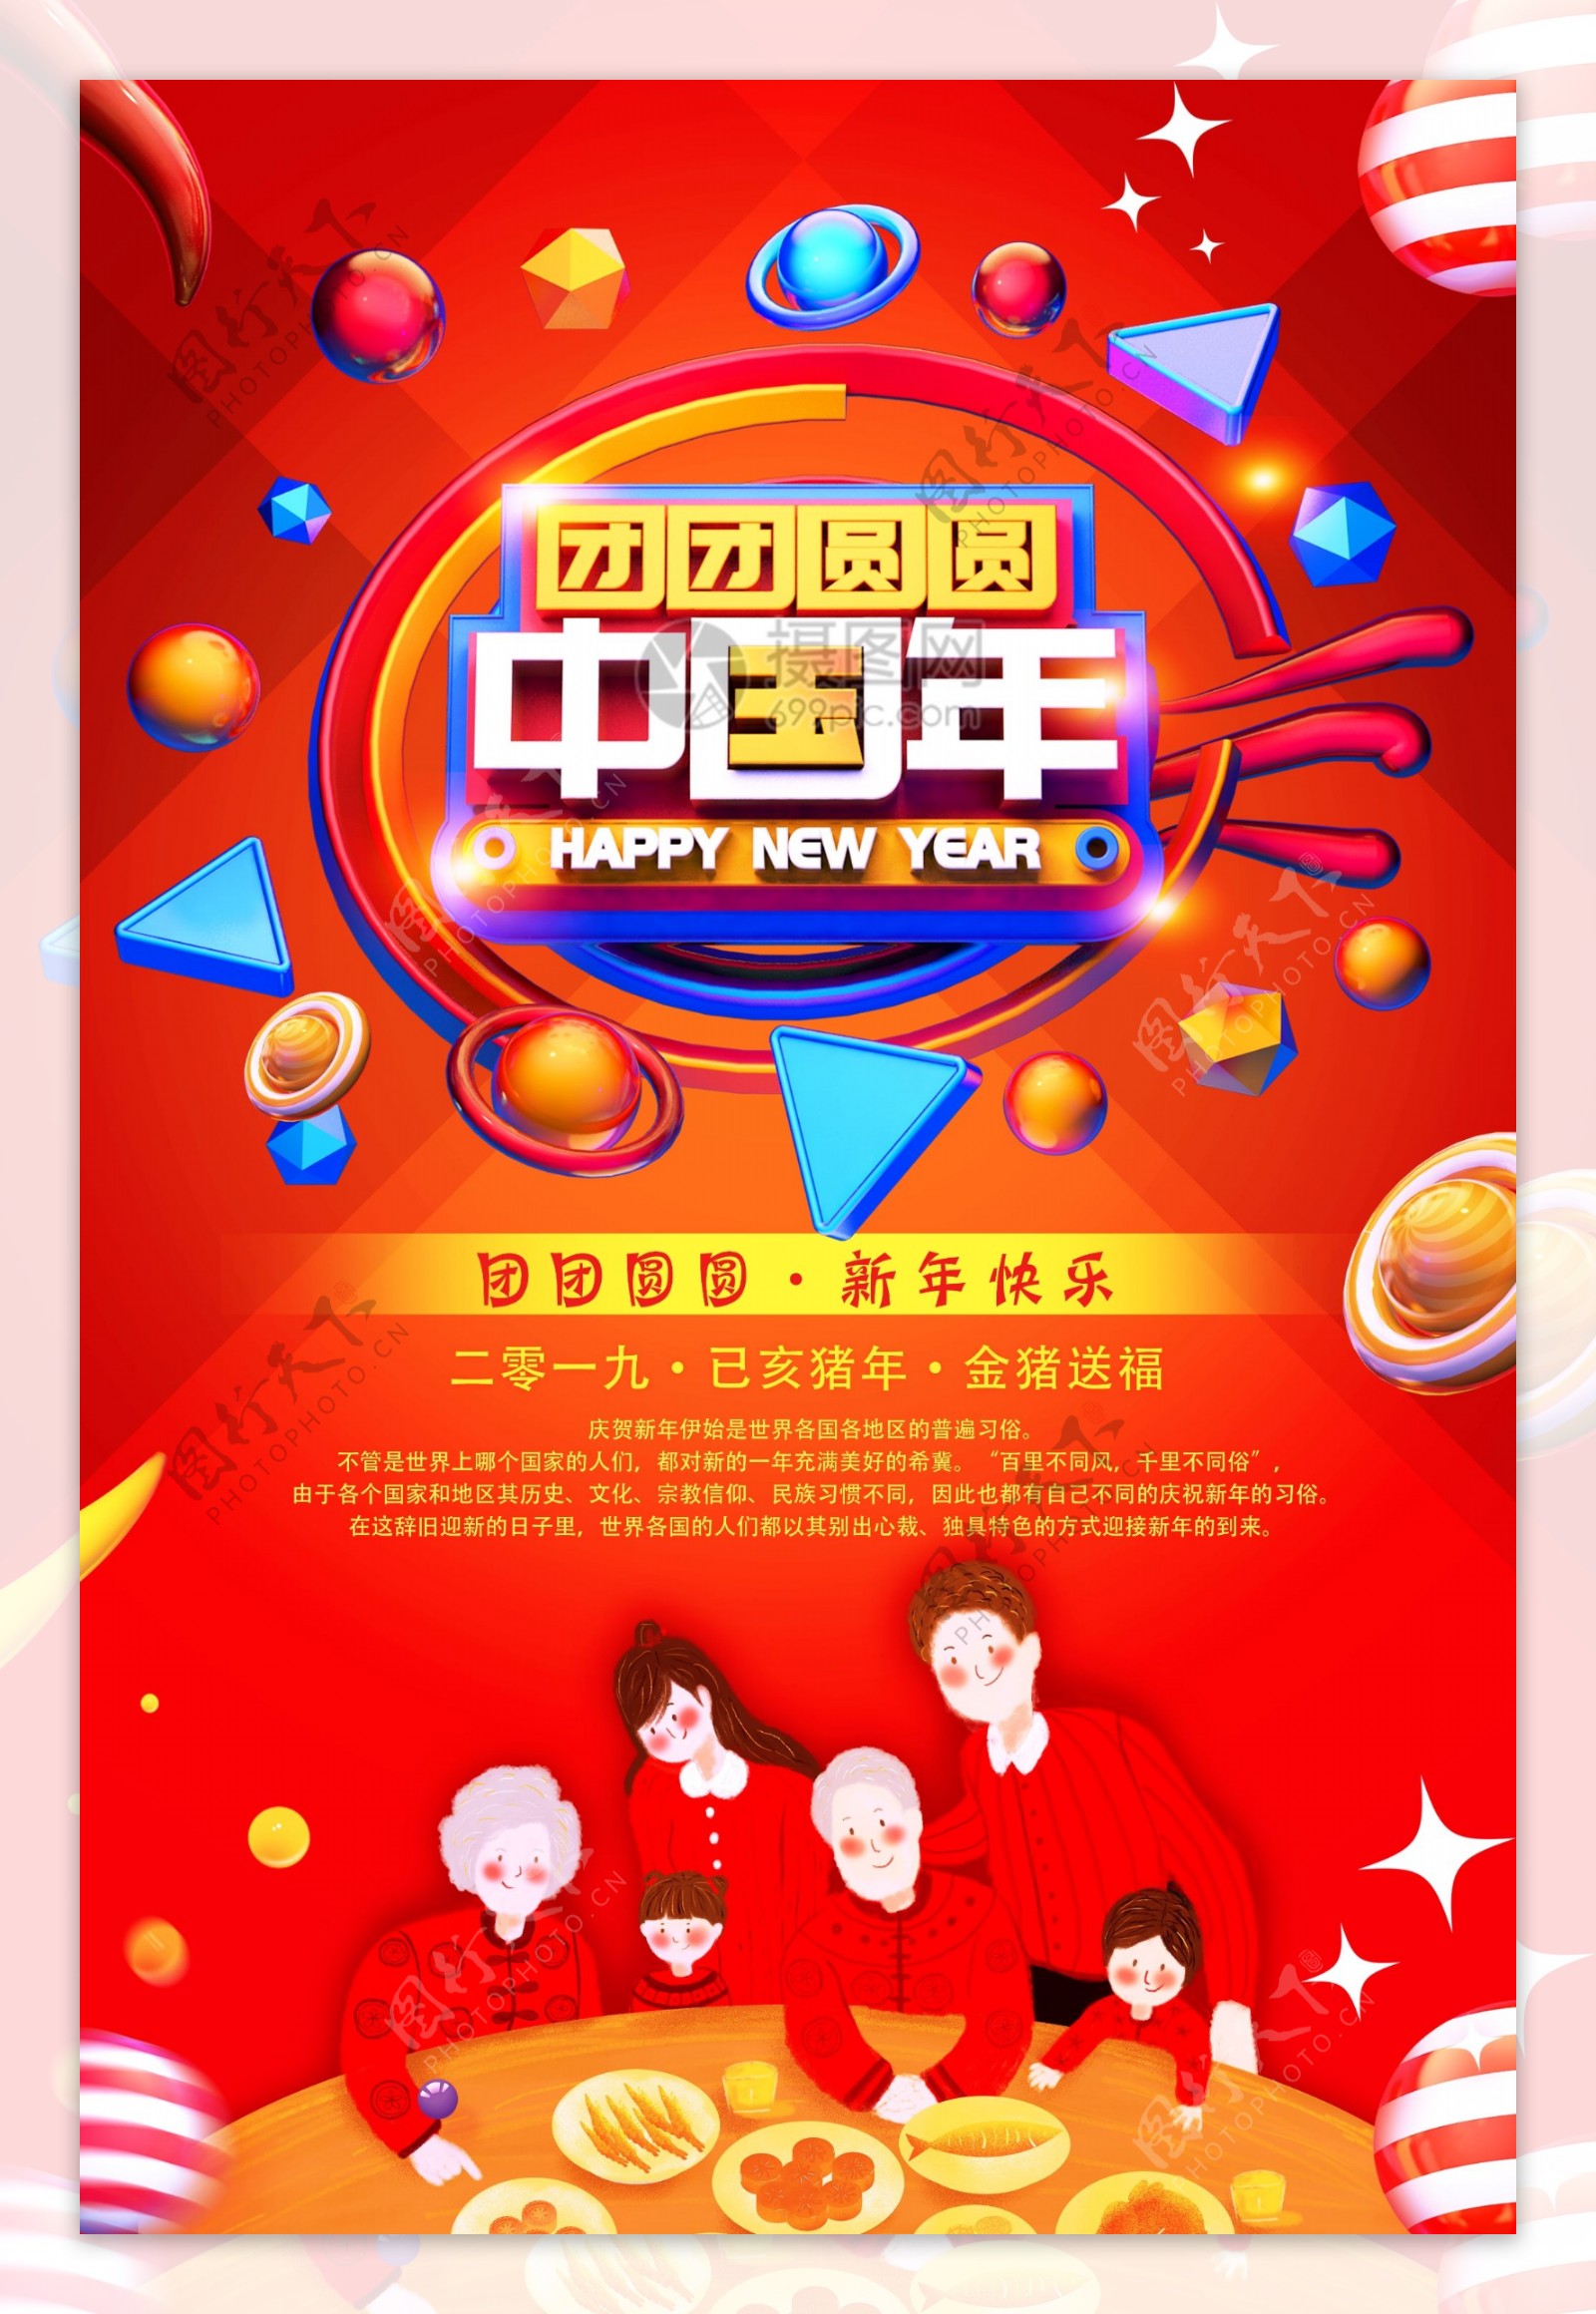 团团圆圆中国年新年节日海报